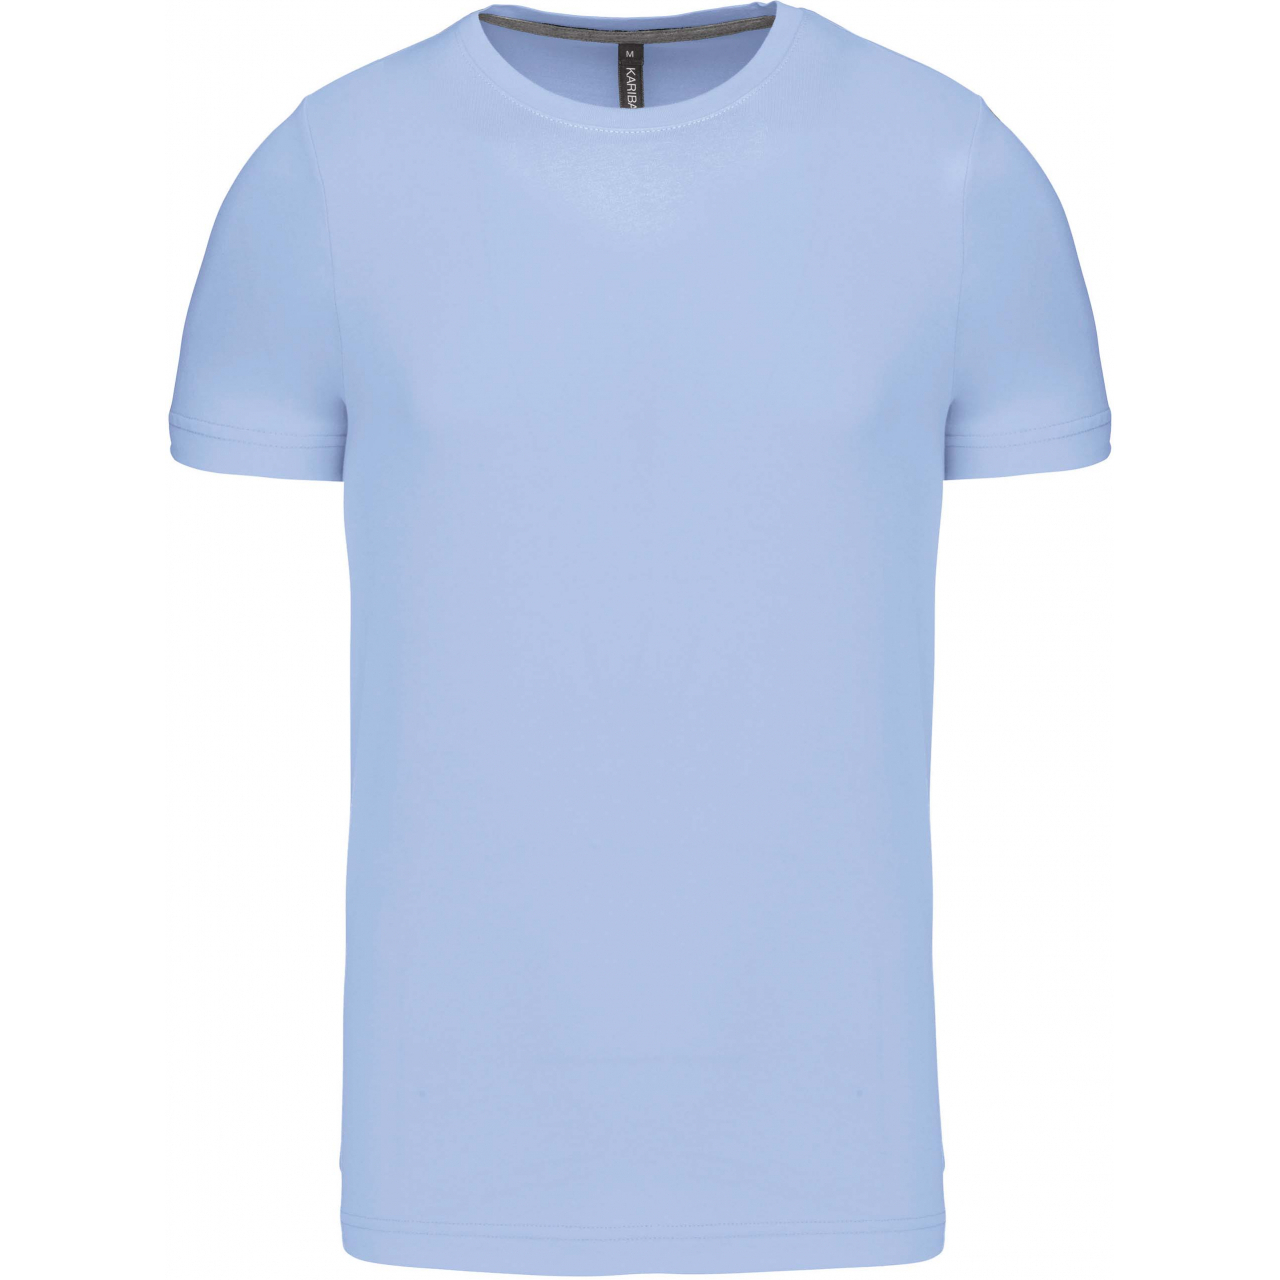 Pánské tričko Kariban krátký rukáv - světle modré, L